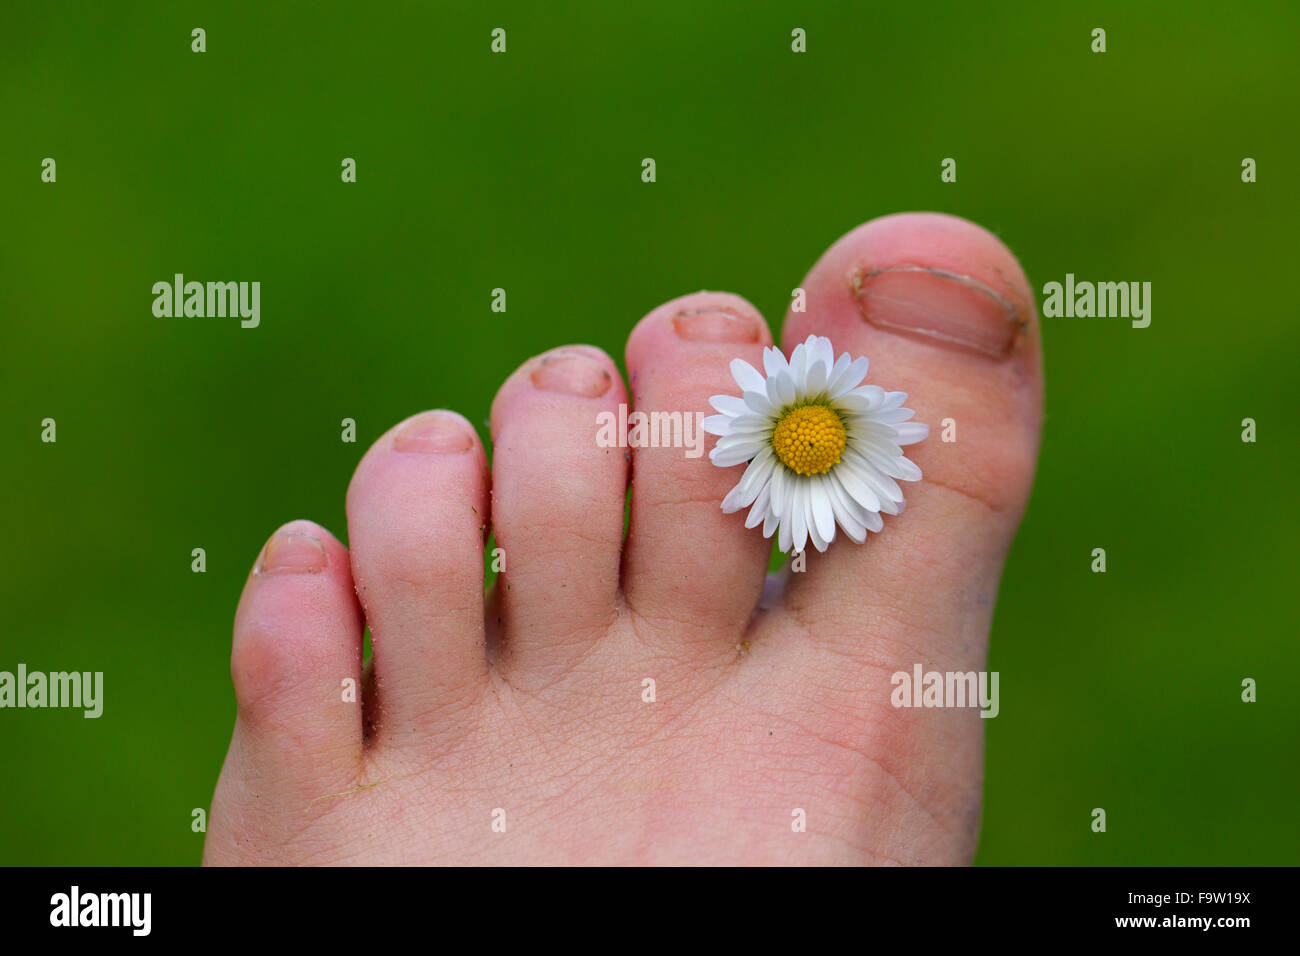 Daisy común / césped daisy (Bellis perennis) flor entre los dedos del pie del niño Foto de stock